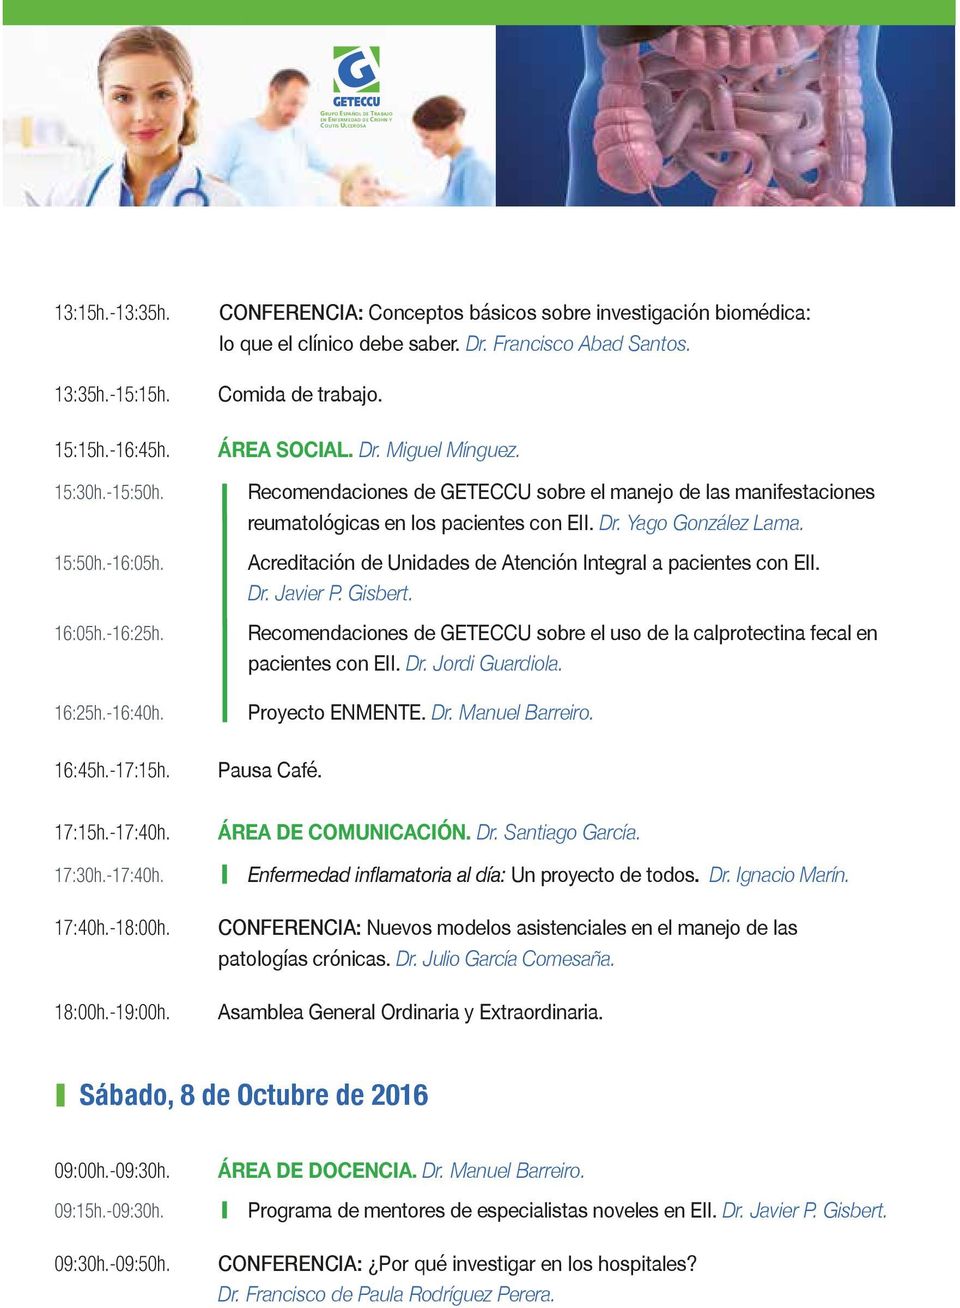 Recomendaciones de GETECCU sobre el manejo de las manifestaciones reumatológicas en los pacientes con EII. Dr. Yago González Lama. Acreditación de Unidades de Atención Integral a pacientes con EII.